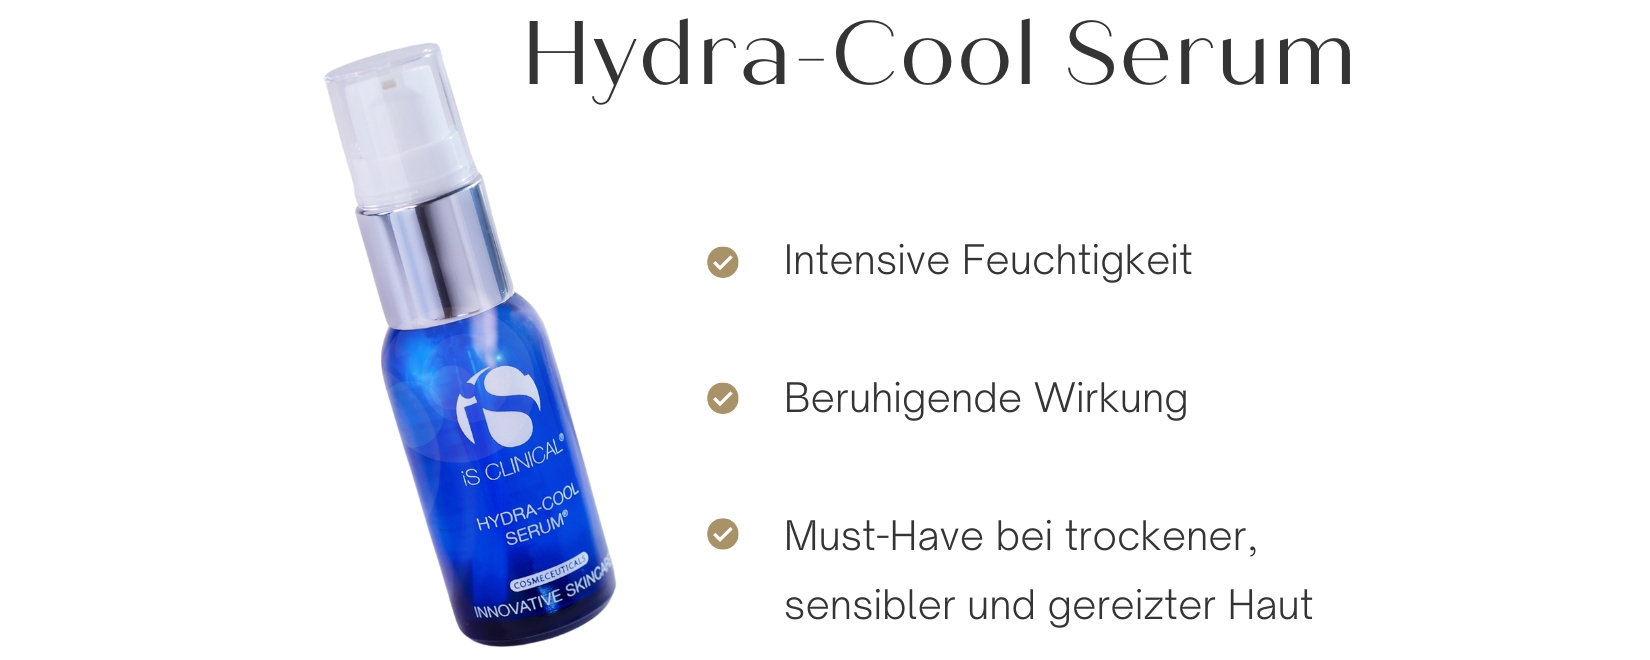 iS Clinical Hydra-Cool Serum für intensive Feuchtigkeit